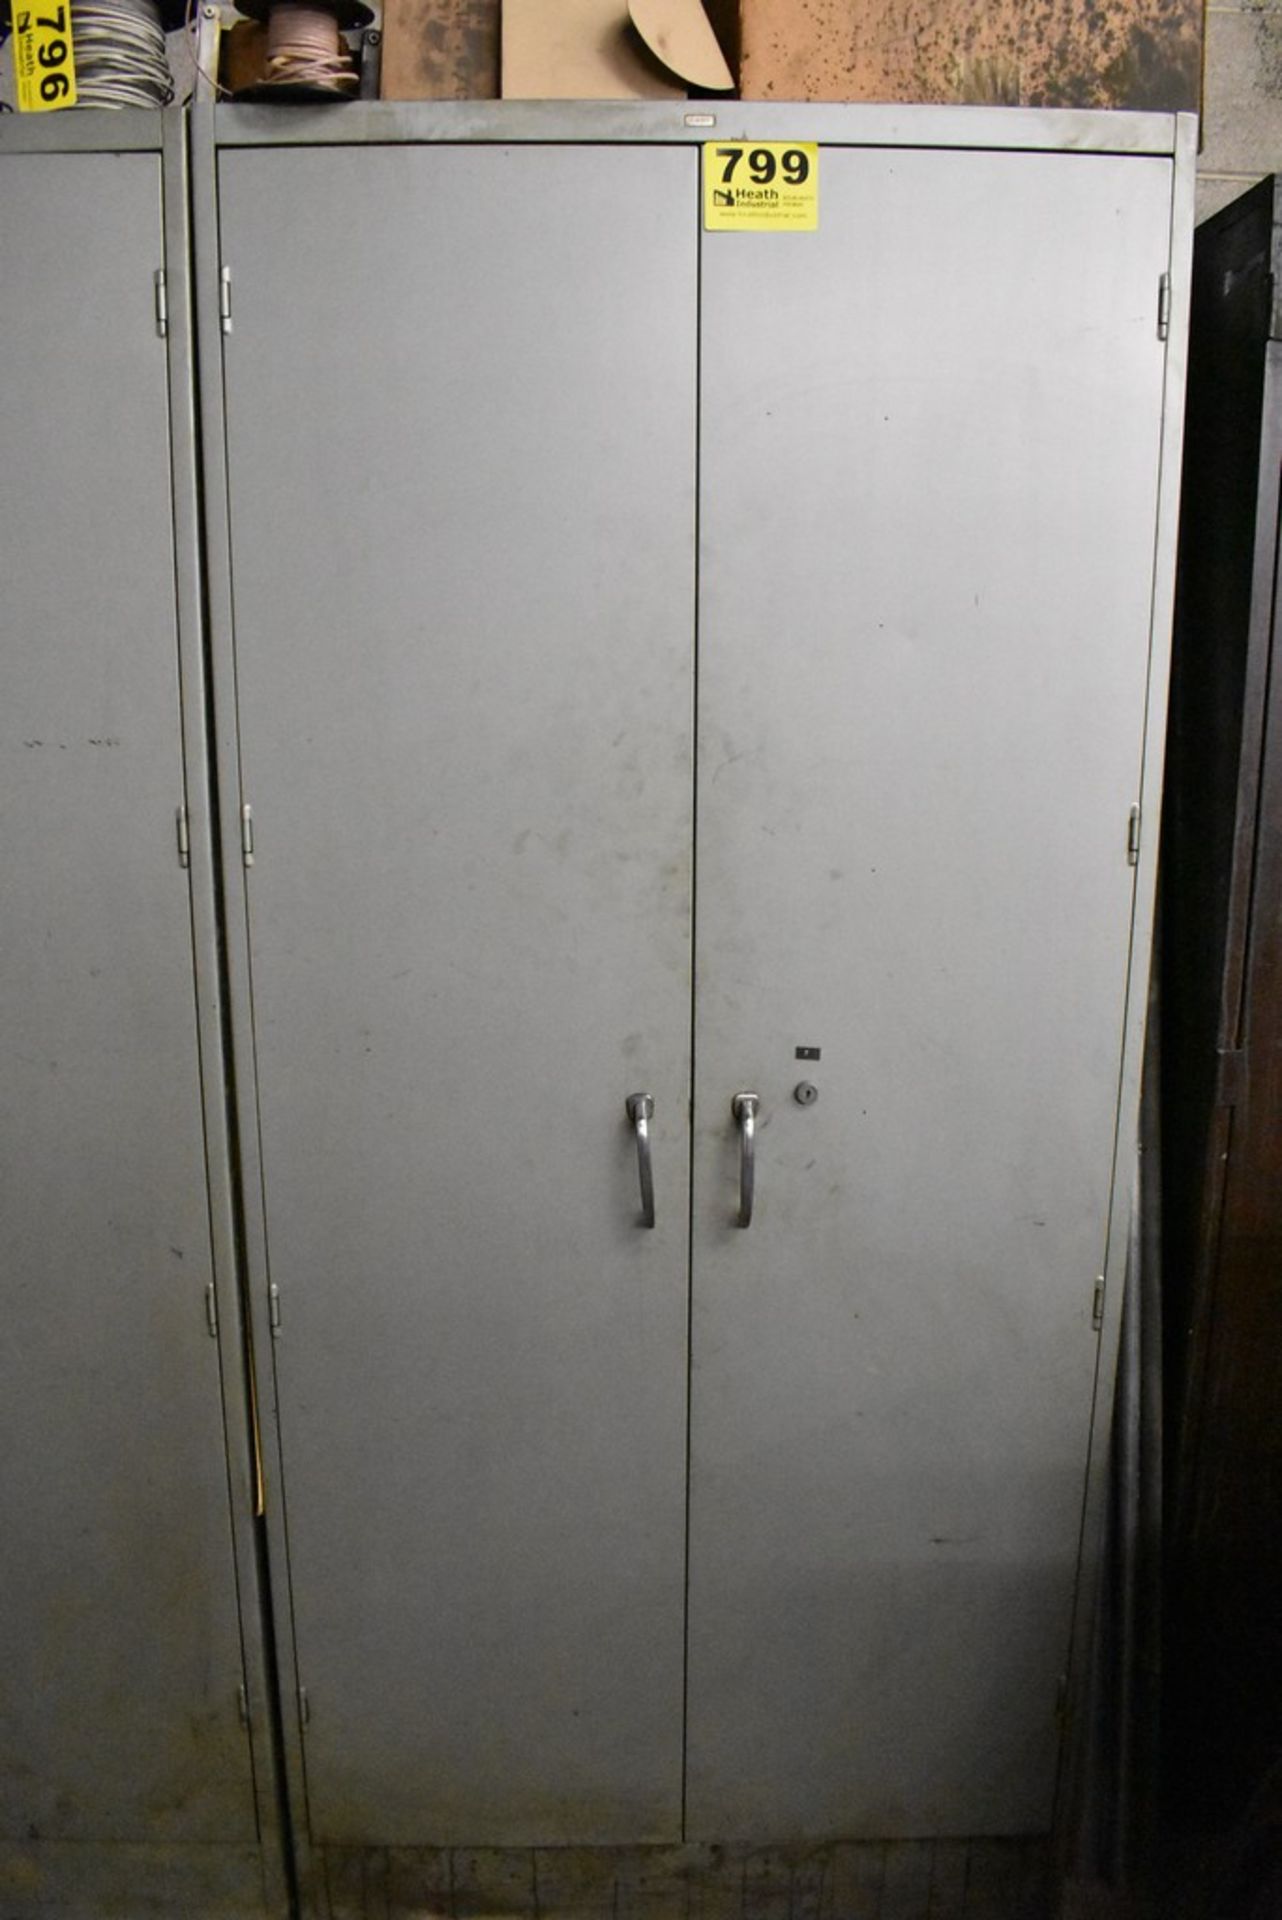 TWO DOOR STEEL STORAGE CABINET WITH CONTENTS, 36" X 24" X 78"